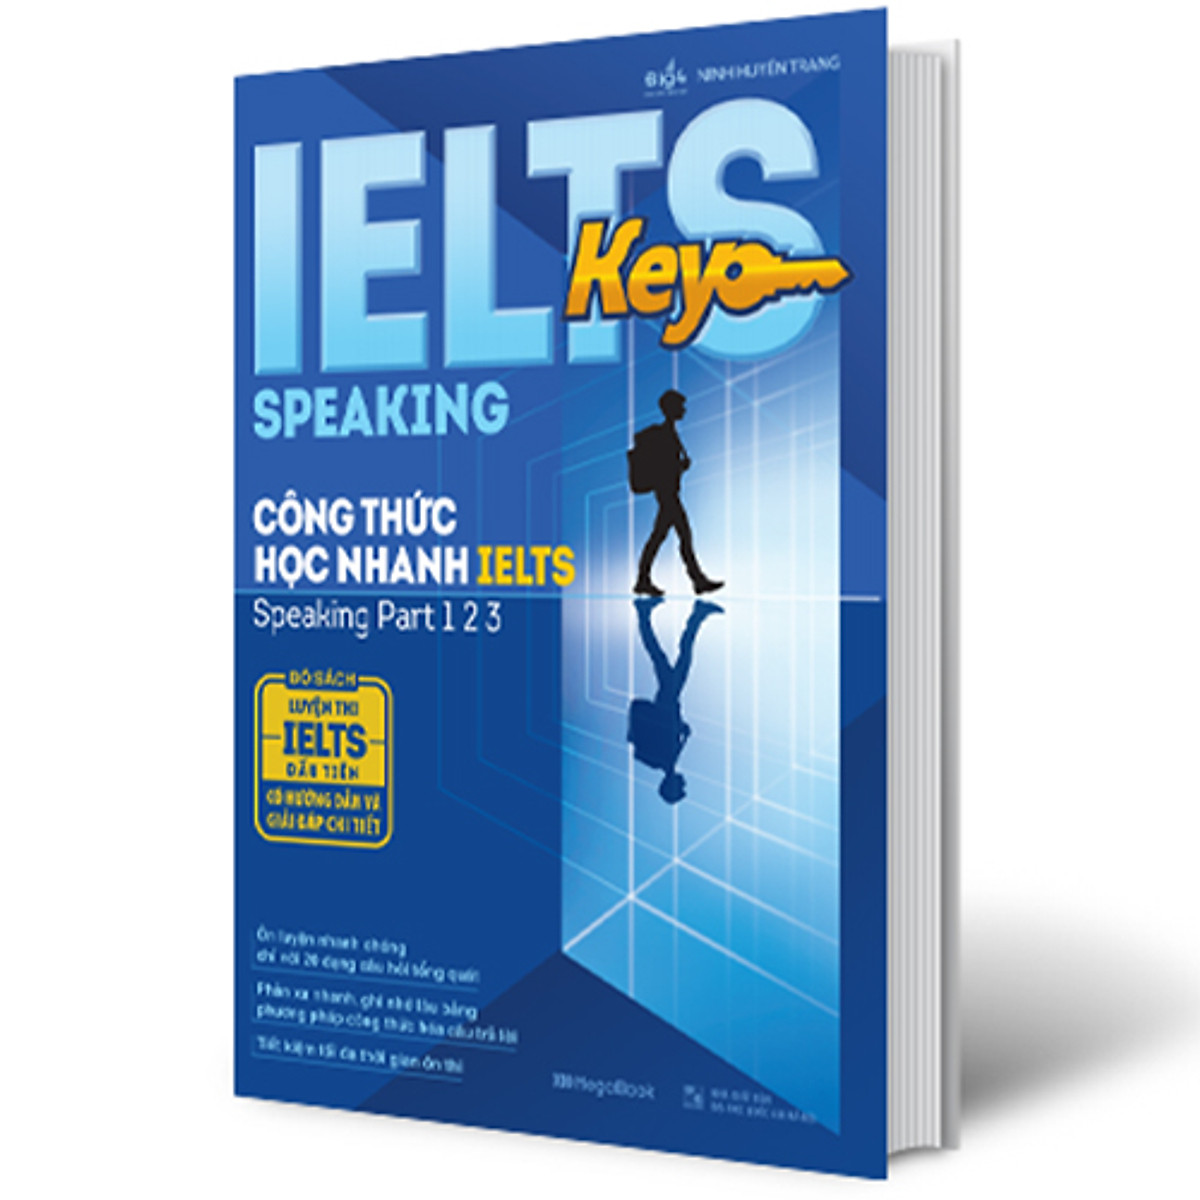 IELTS Key Speaking - Công Thức Học Nhanh IELTS - Speaking Part 1, 2, 3